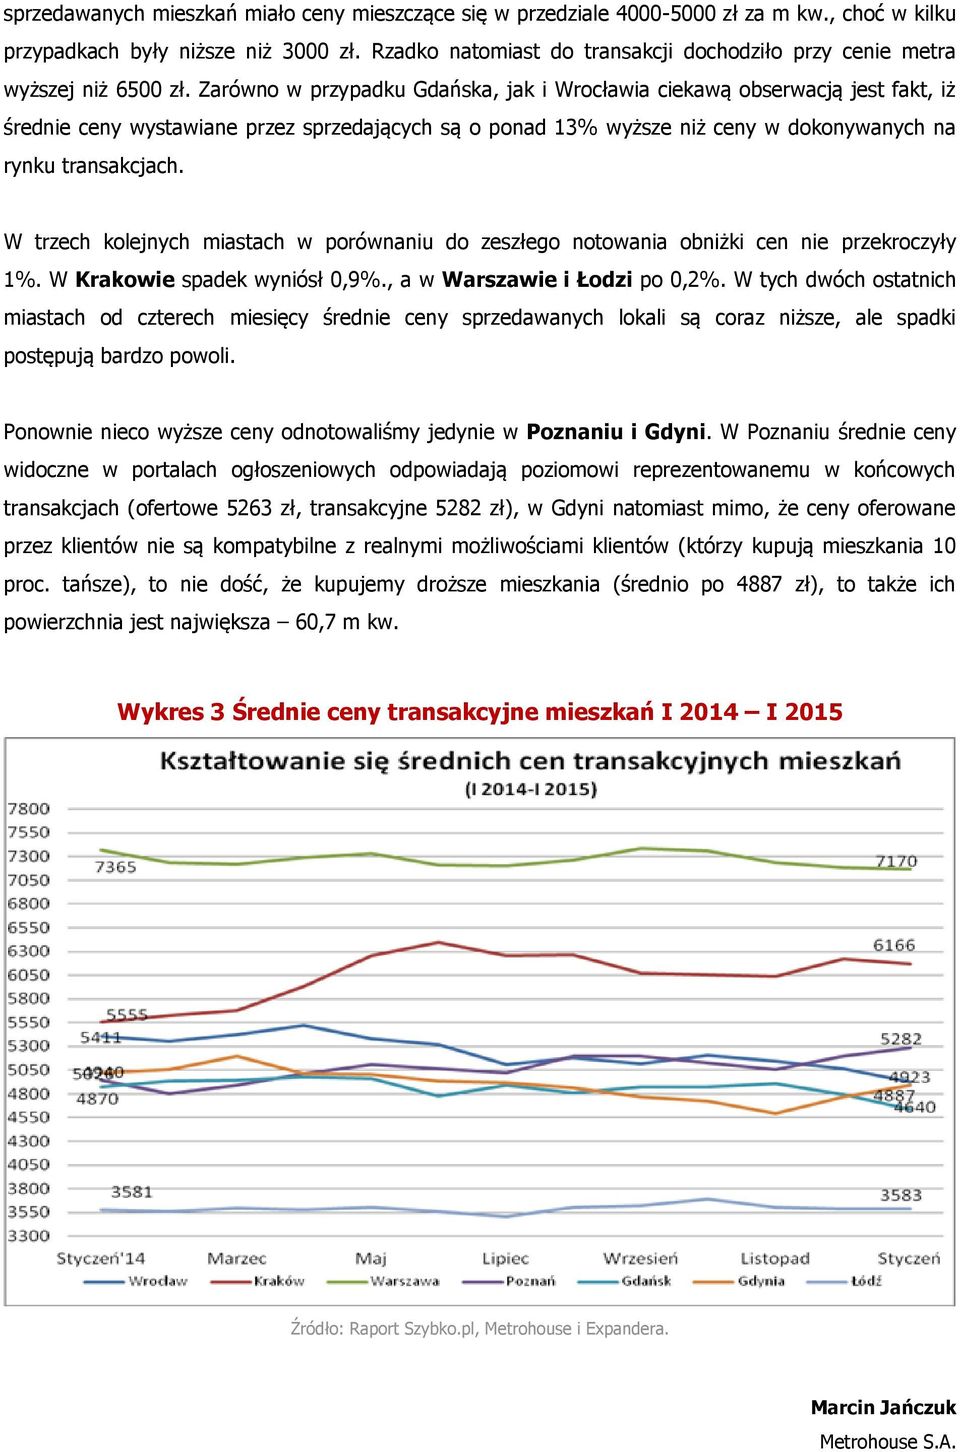 Zarówno w przypadku Gdańska, jak i Wrocławia ciekawą obserwacją jest fakt, iż średnie ceny wystawiane przez sprzedających są o ponad 13% wyższe niż ceny w dokonywanych na rynku transakcjach.